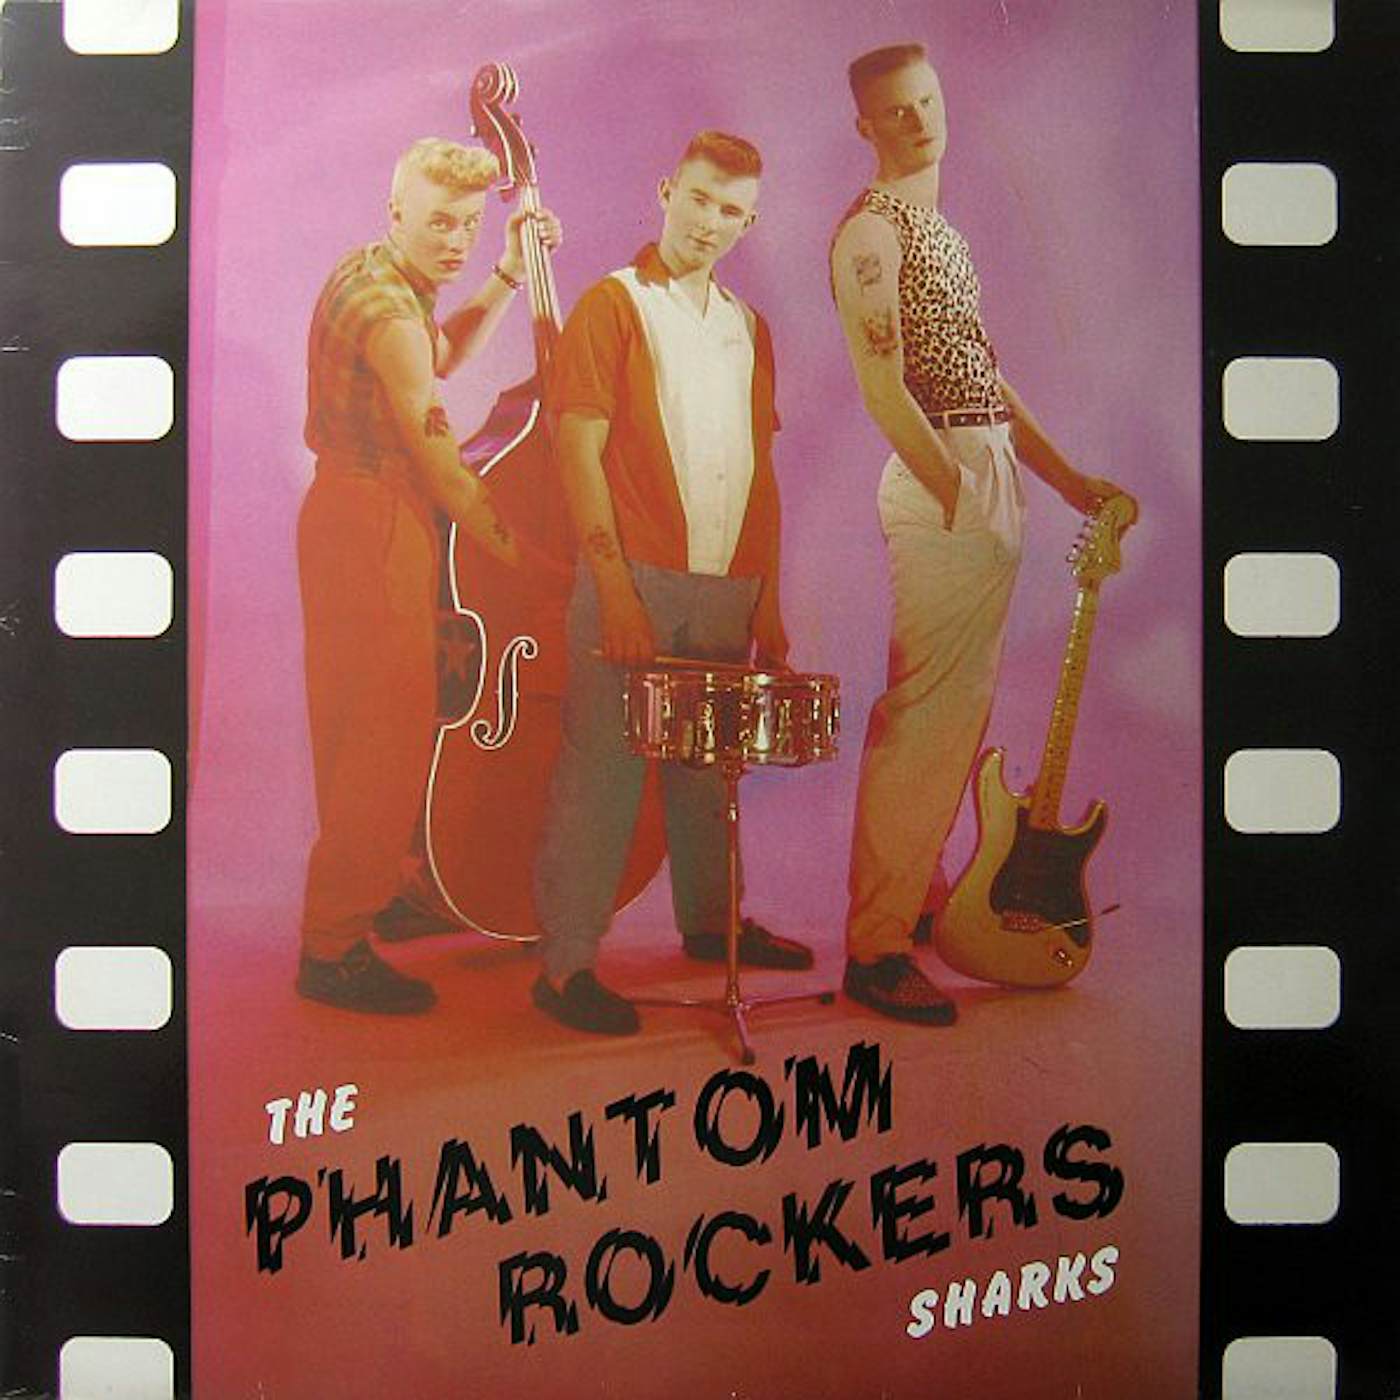 Sharks PHANTOM ROCKERS PART 2 Vinyl Record